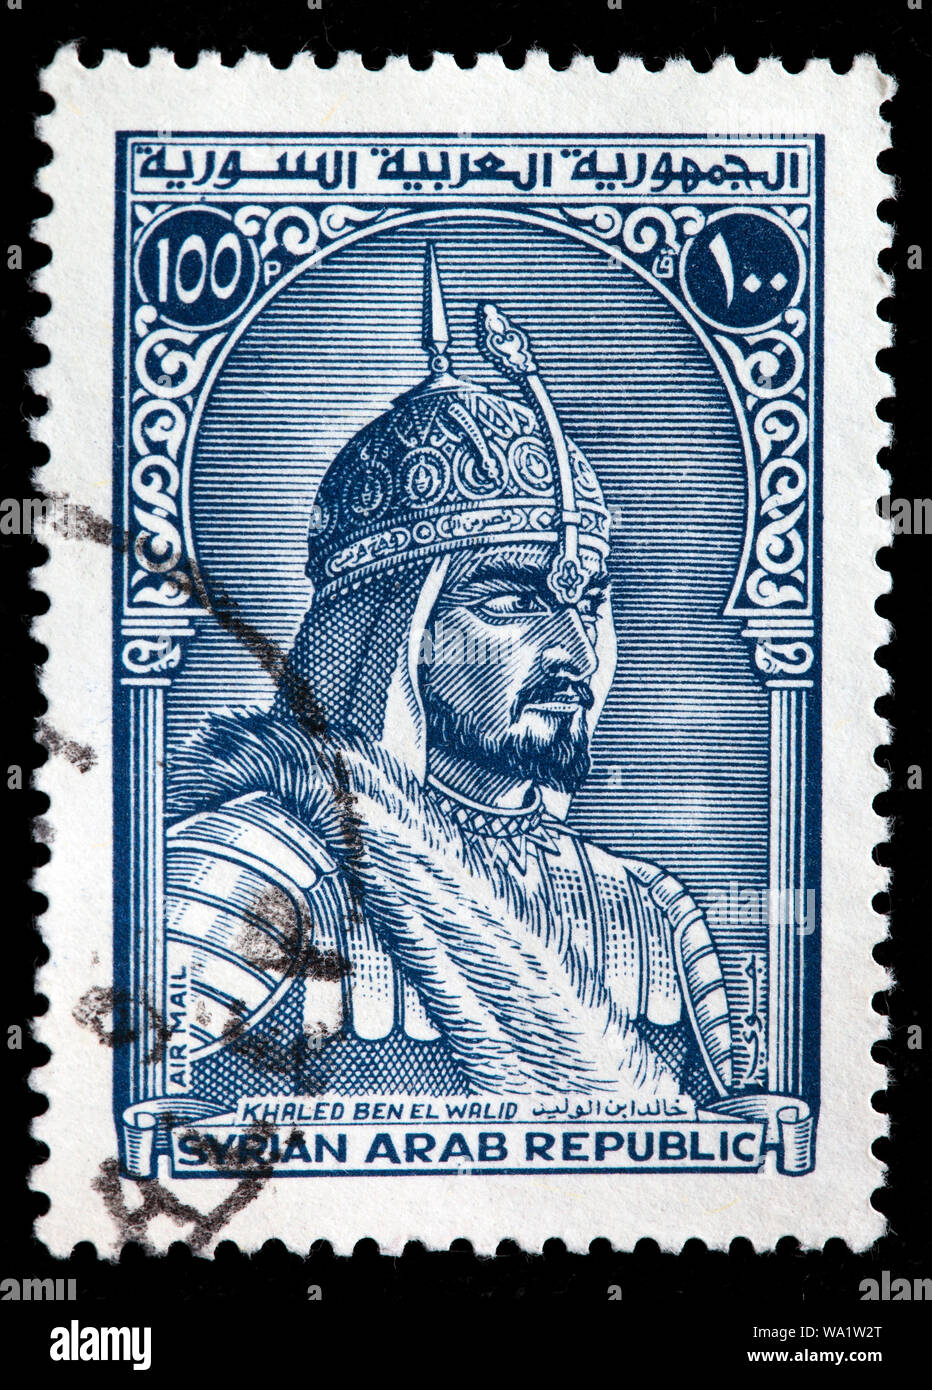 Khalid Ibn al-Walid (585-642), Musulmans général, timbre-poste, Syrie, 1970 Banque D'Images